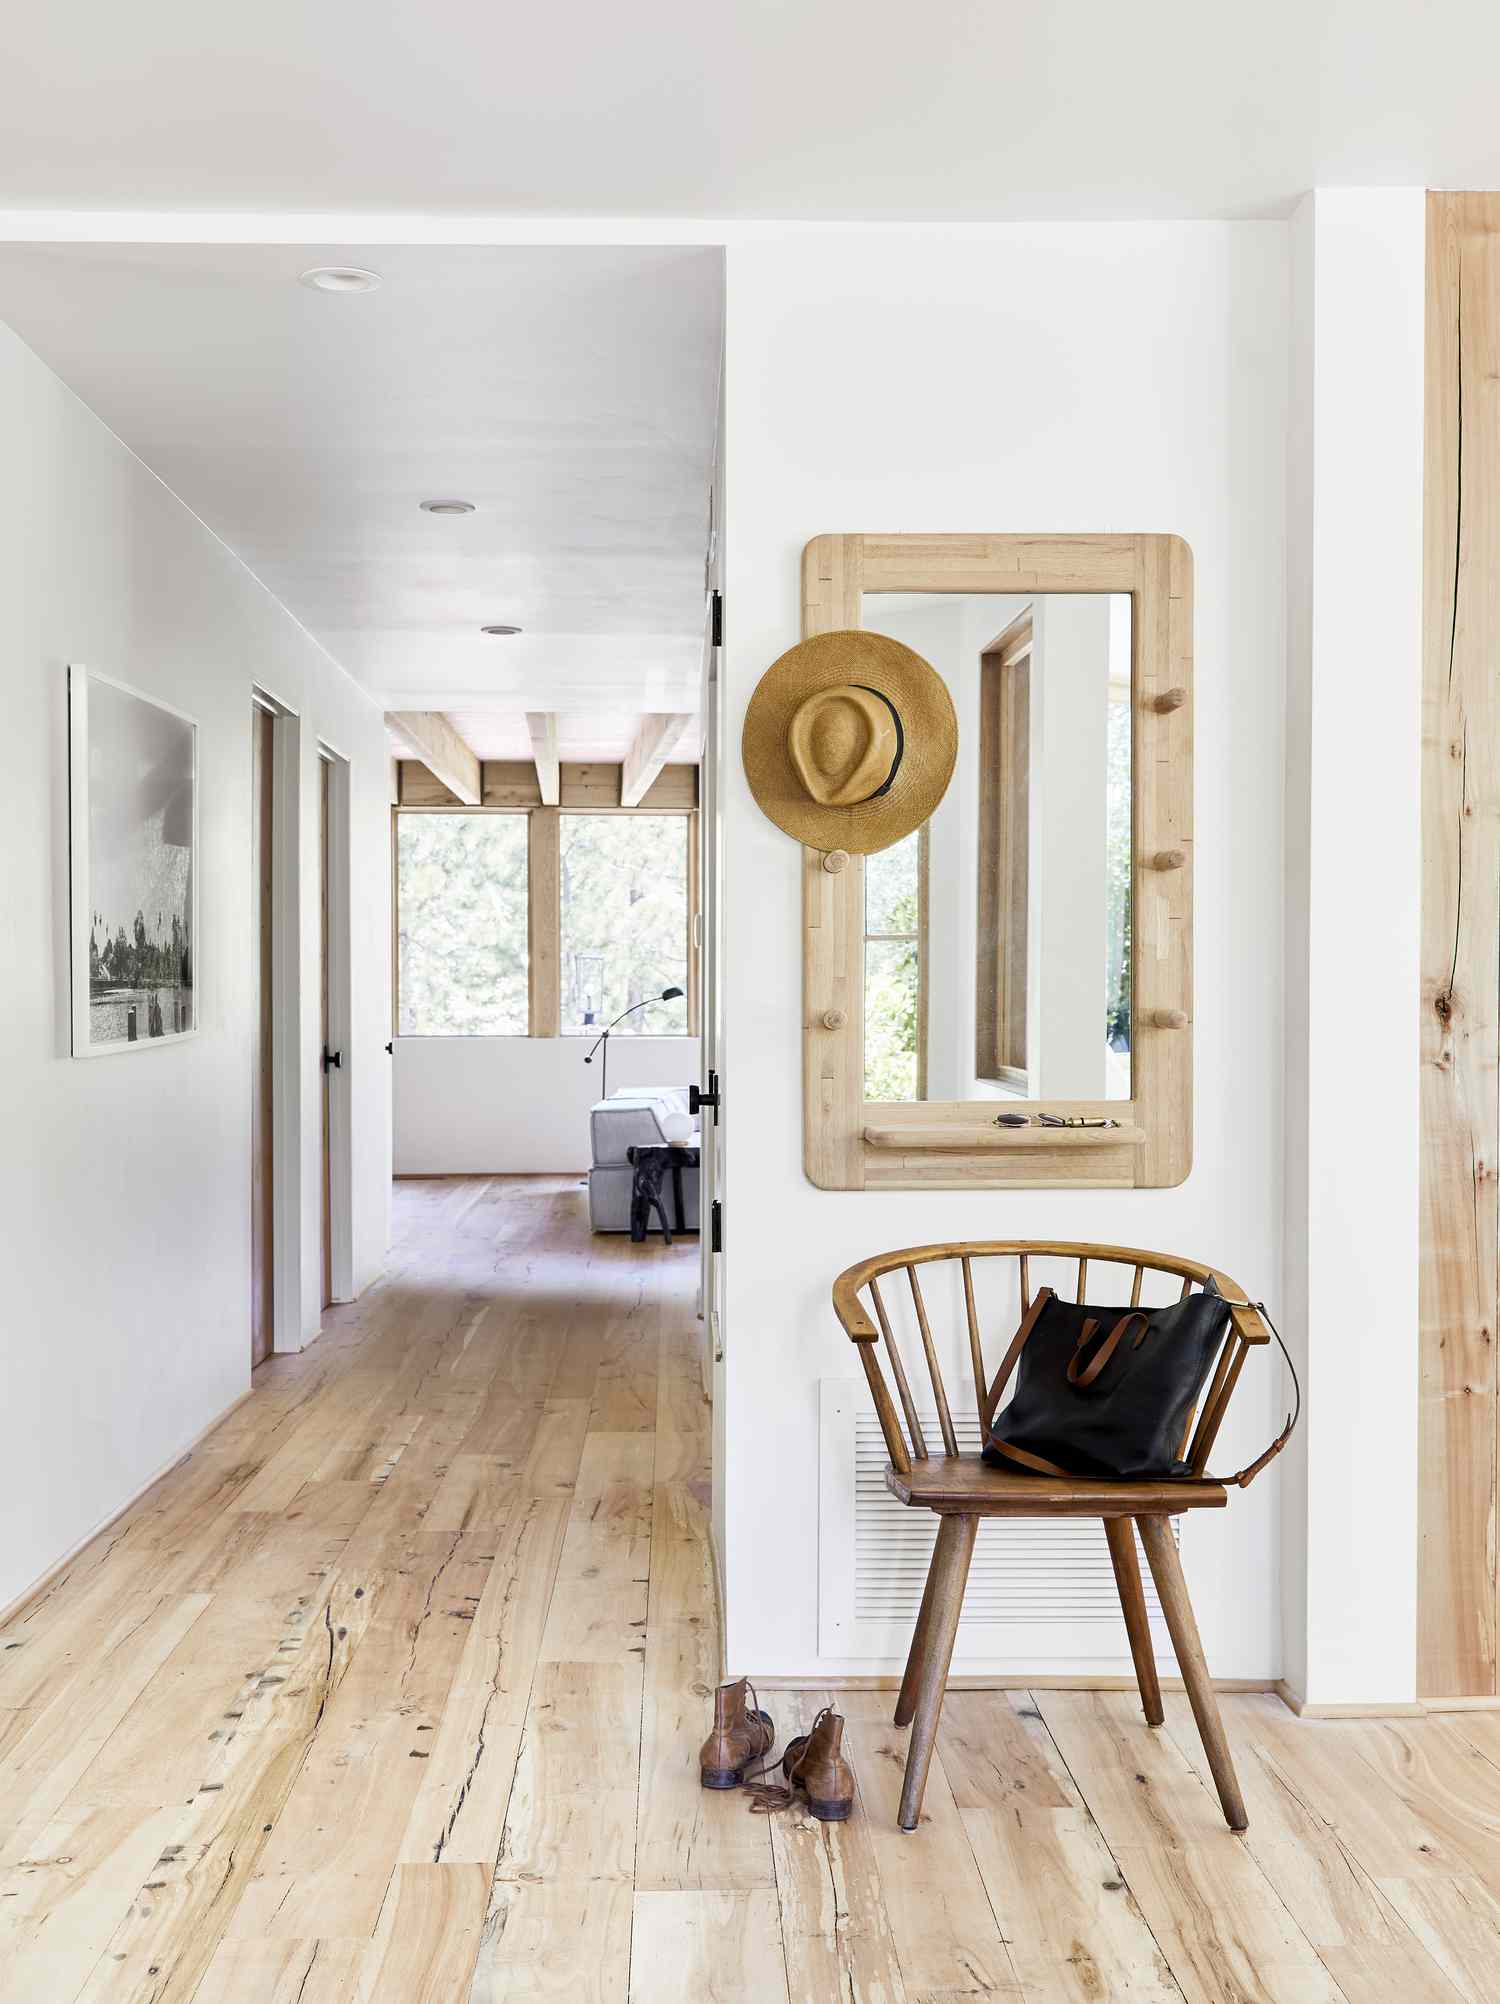 Corredor branco com piso de madeira e uma cadeira e espelho de madeira